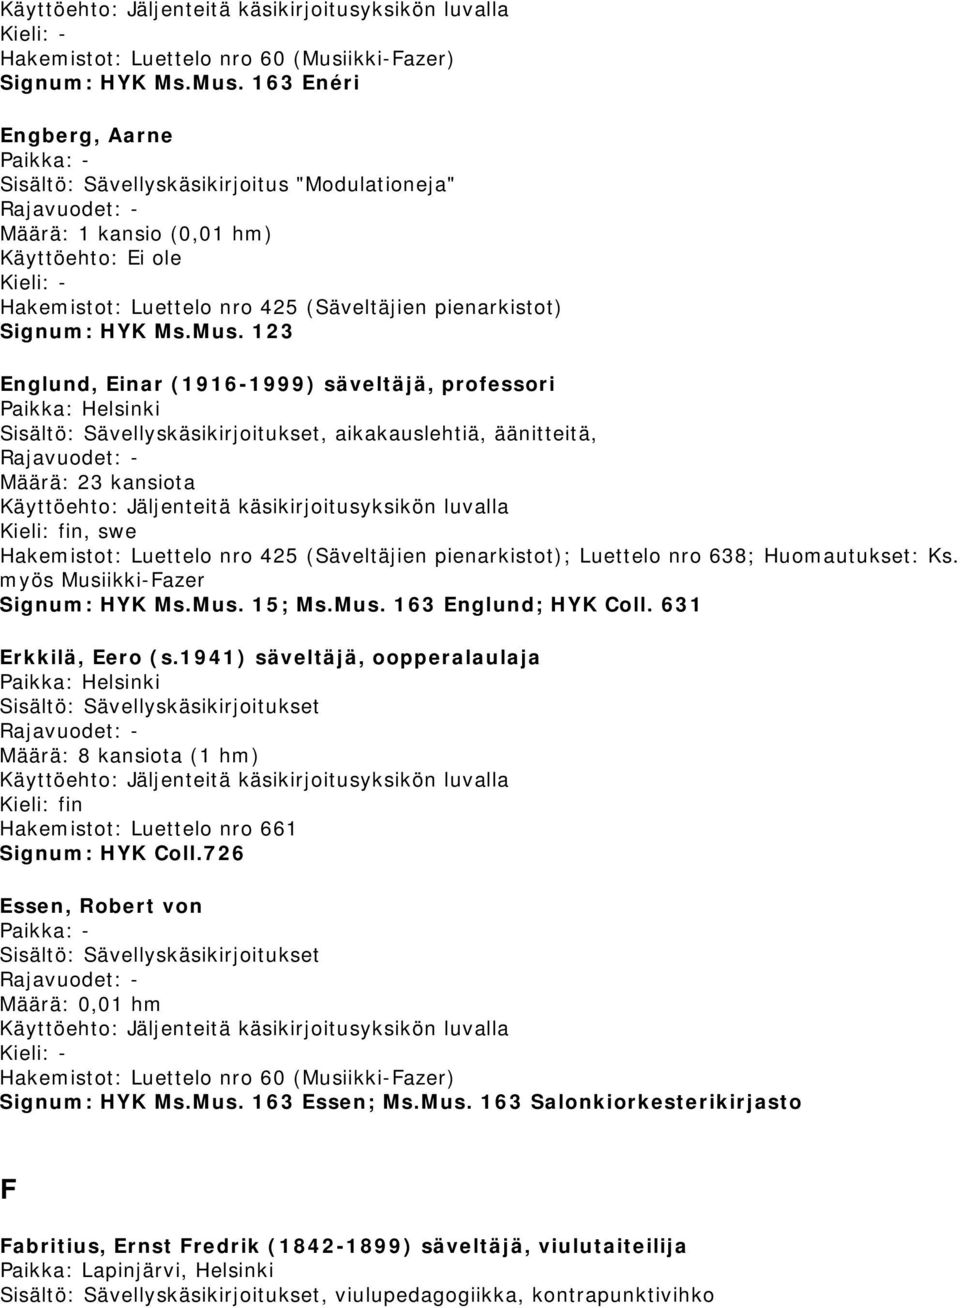 1941) säveltäjä, oopperalaulaja Määrä: 8 kansiota (1 hm) Hakemistot: Luettelo nro 661 Signum: HYK Coll.726 Essen, Robert von Signum: HYK Ms.Mus.